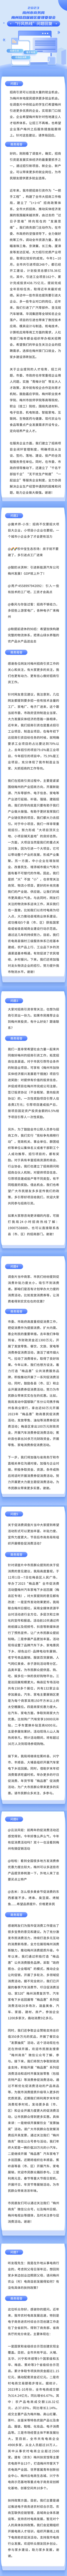 融媒体政务工作报告文章长图(1).jpg